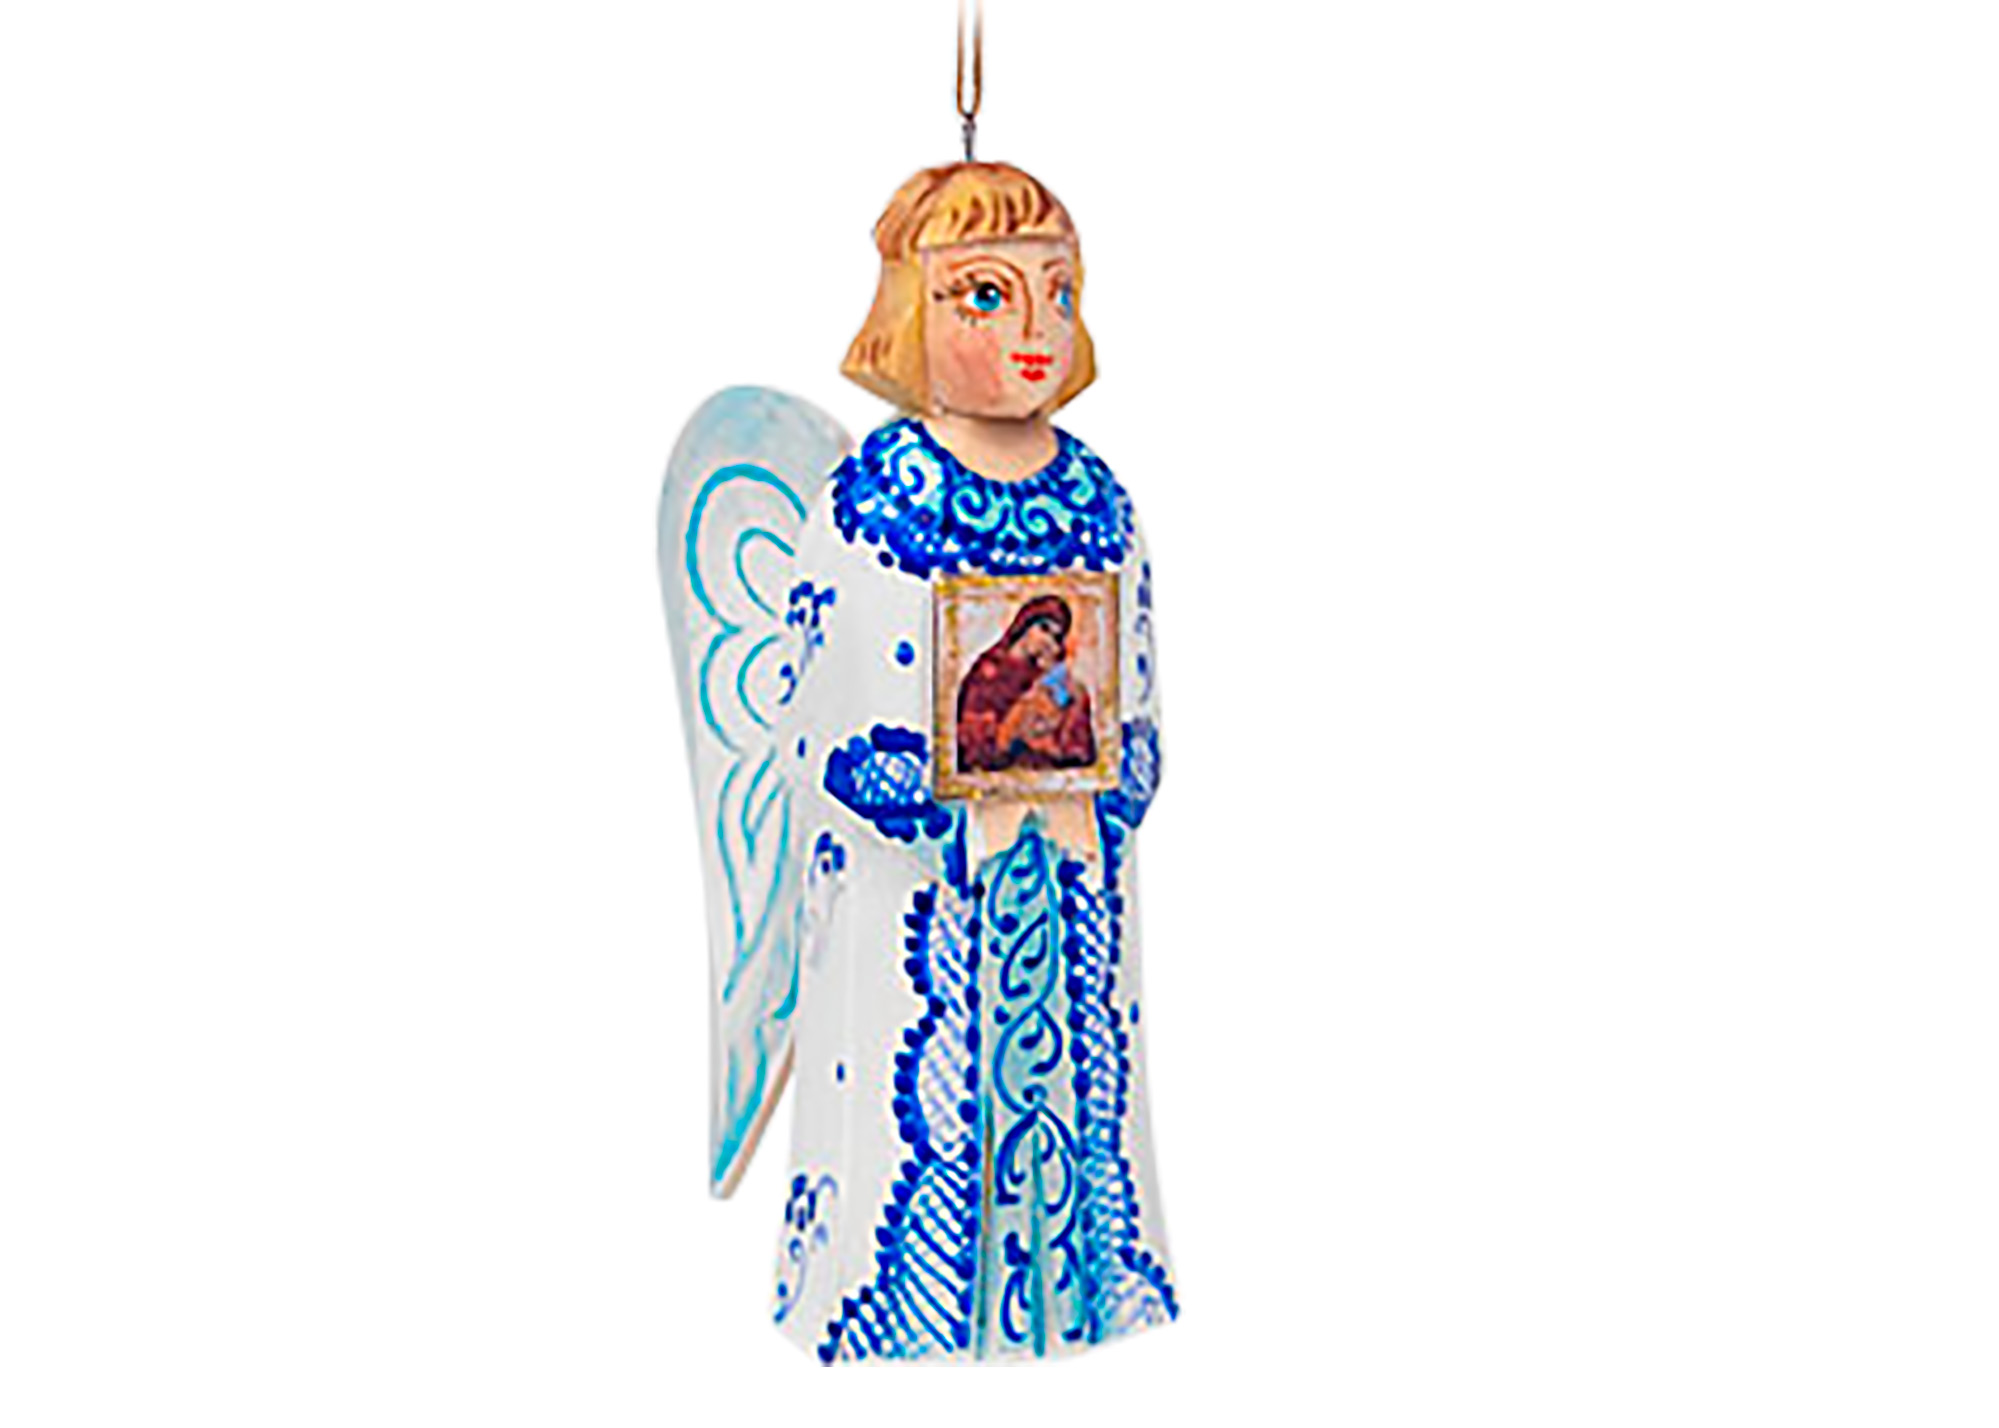 Buy Резное елочное украшение "Ангел-хранитель" 11 см at GoldenCockerel.com